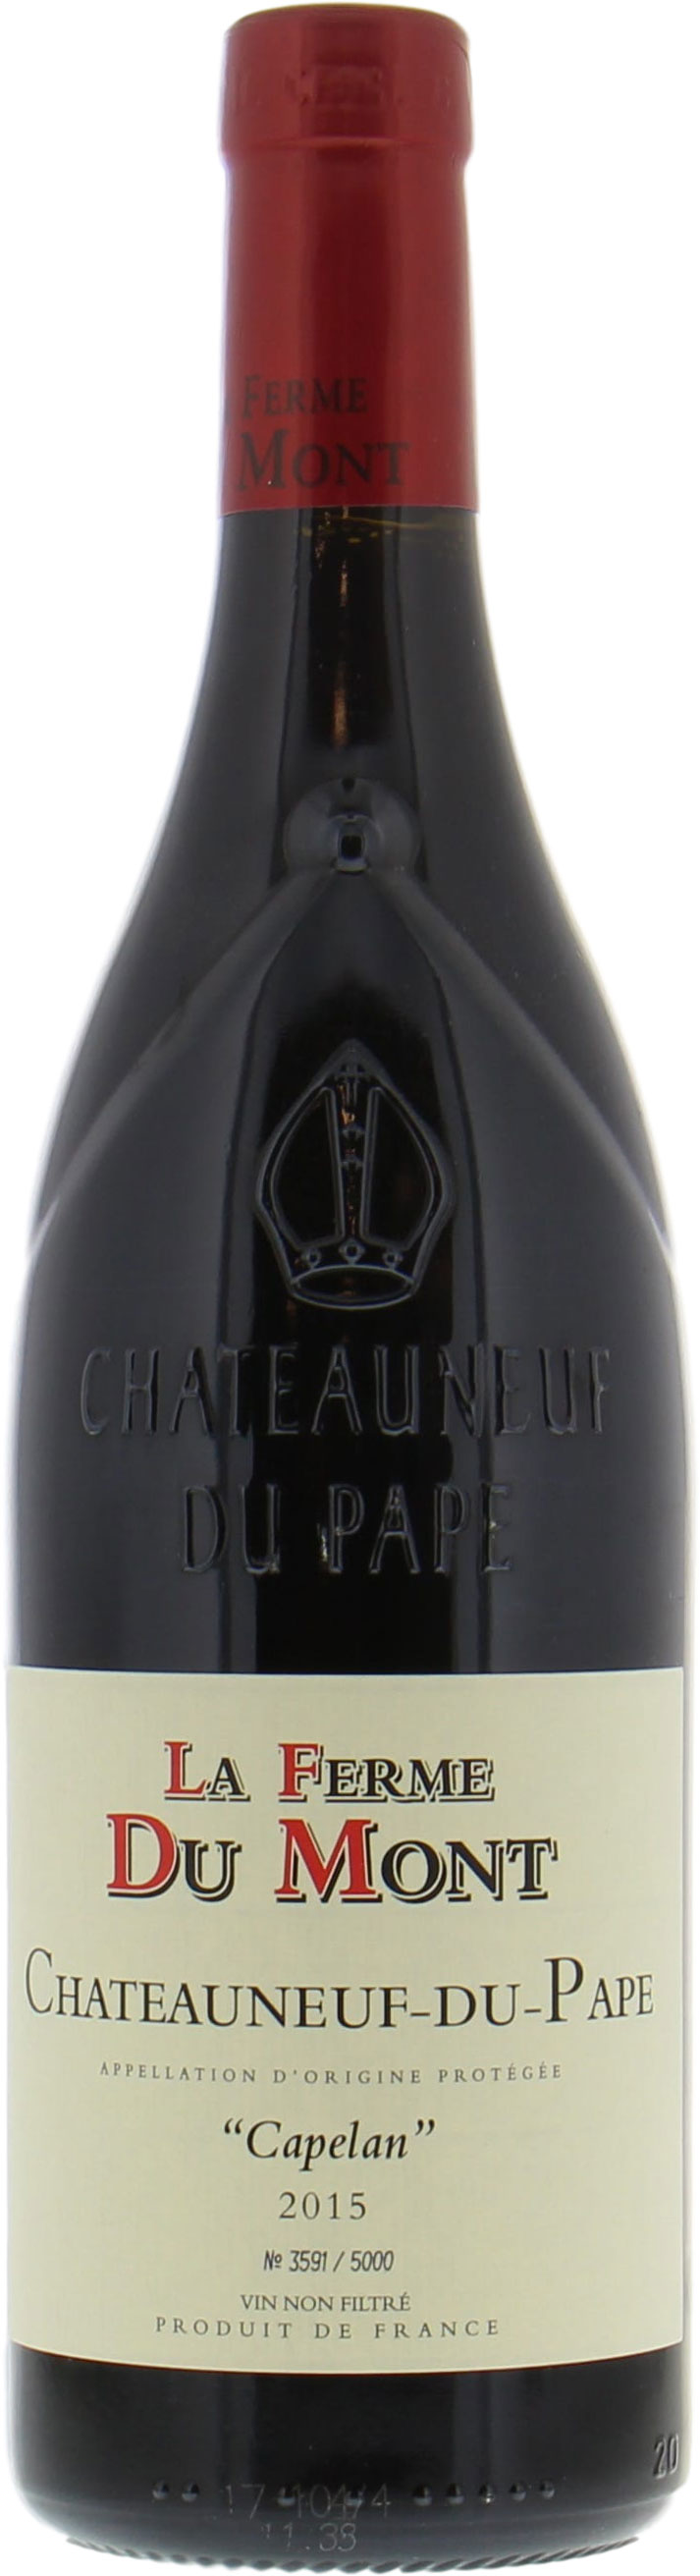 La Ferme du Mont - Chateauneuf du Pape Cotes Capelan 2015 Perfect